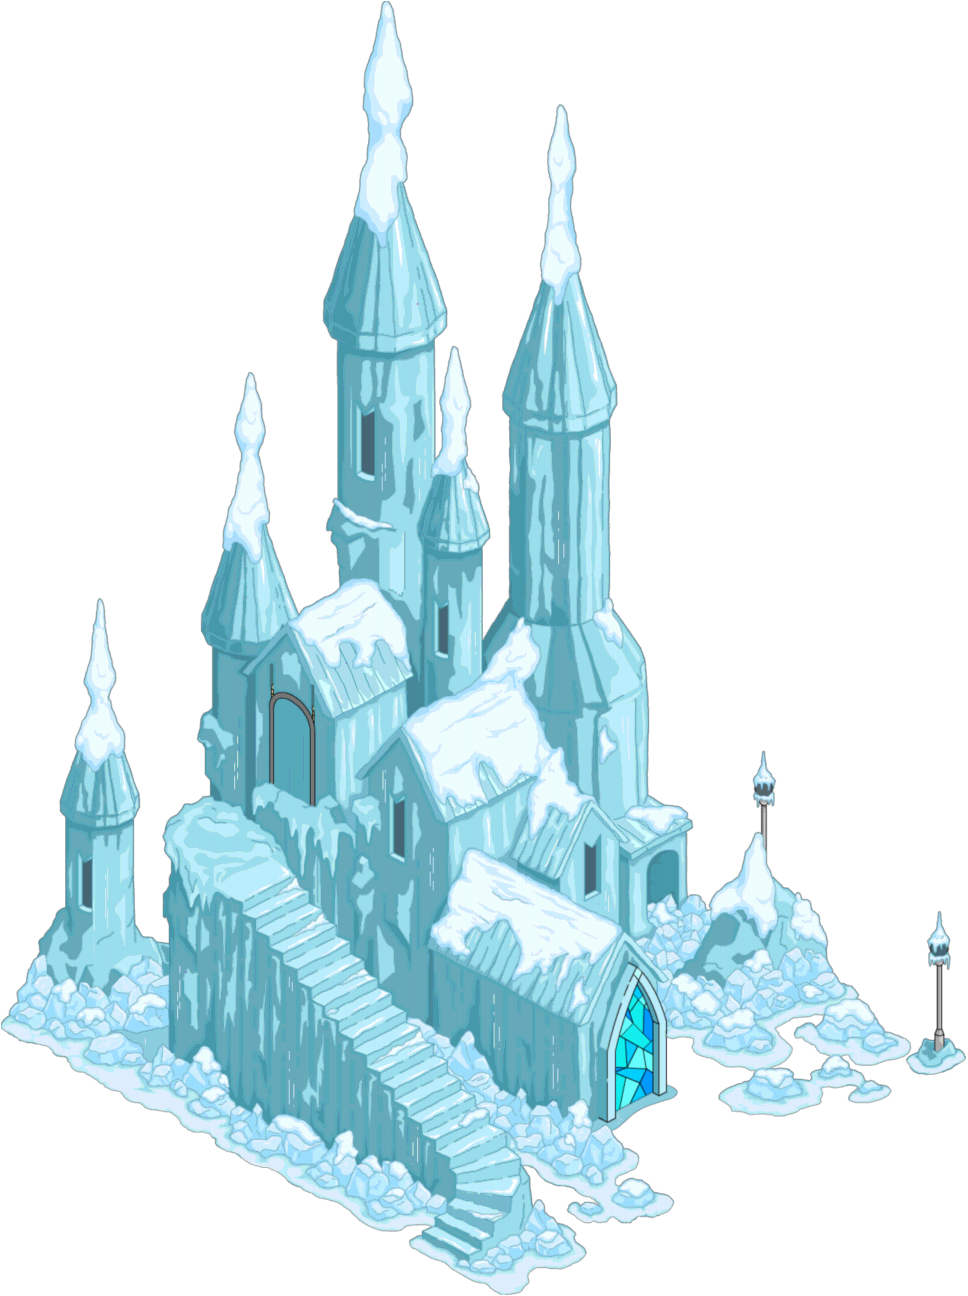 Disney-frozen-ice-castle-wall